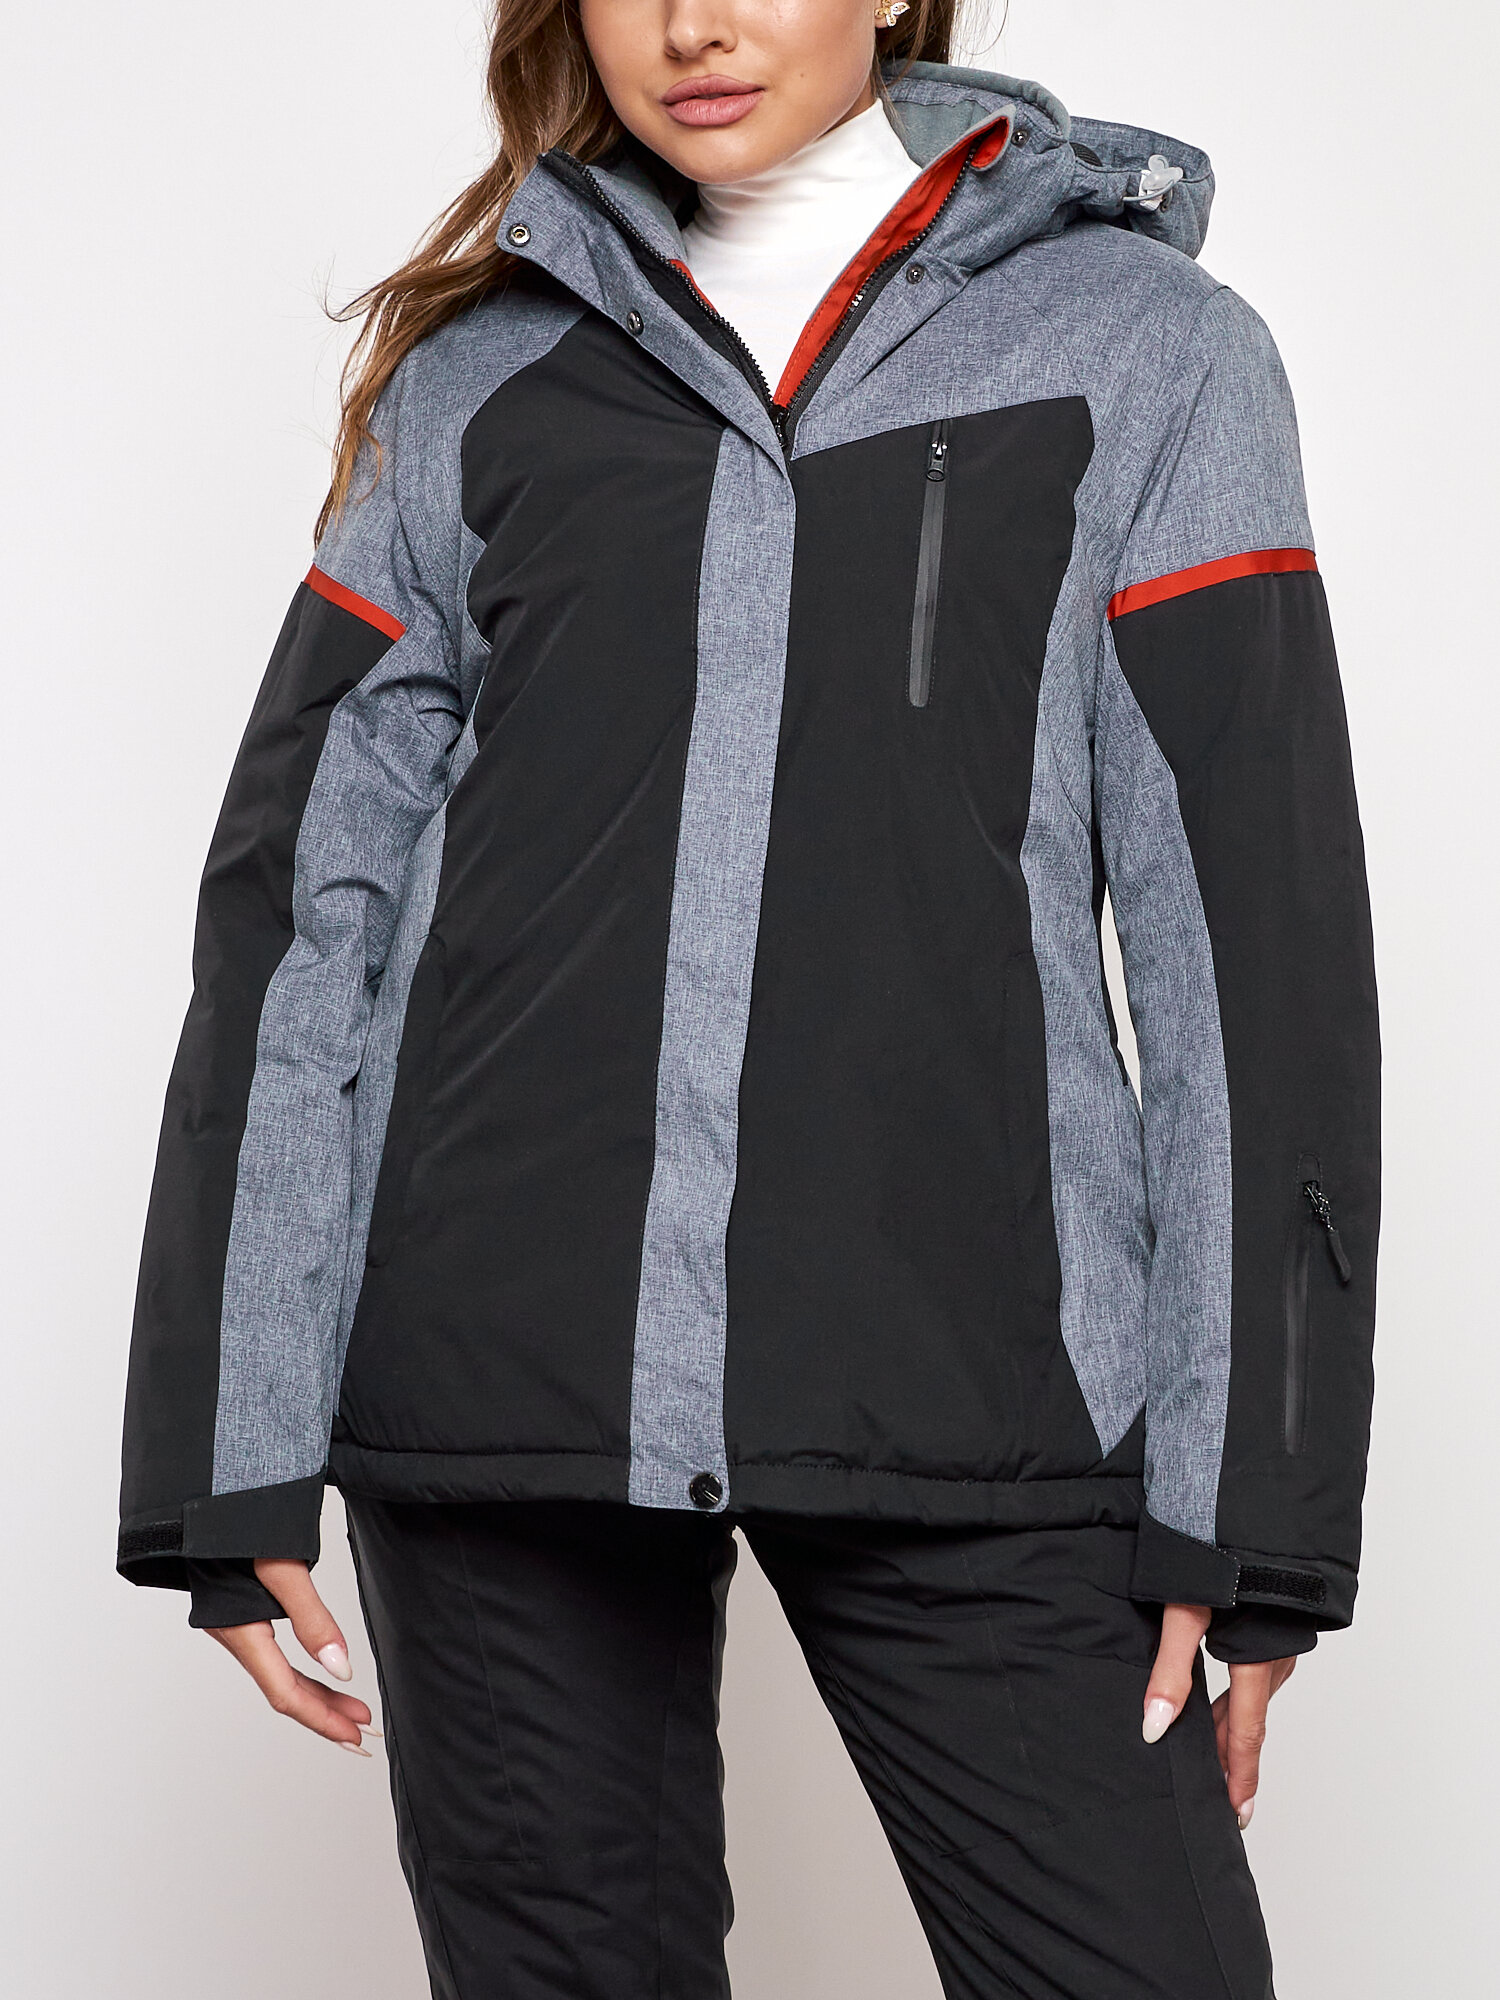 Горнолыжная куртка женская зимняя большого размера AD2272-3Ch 56